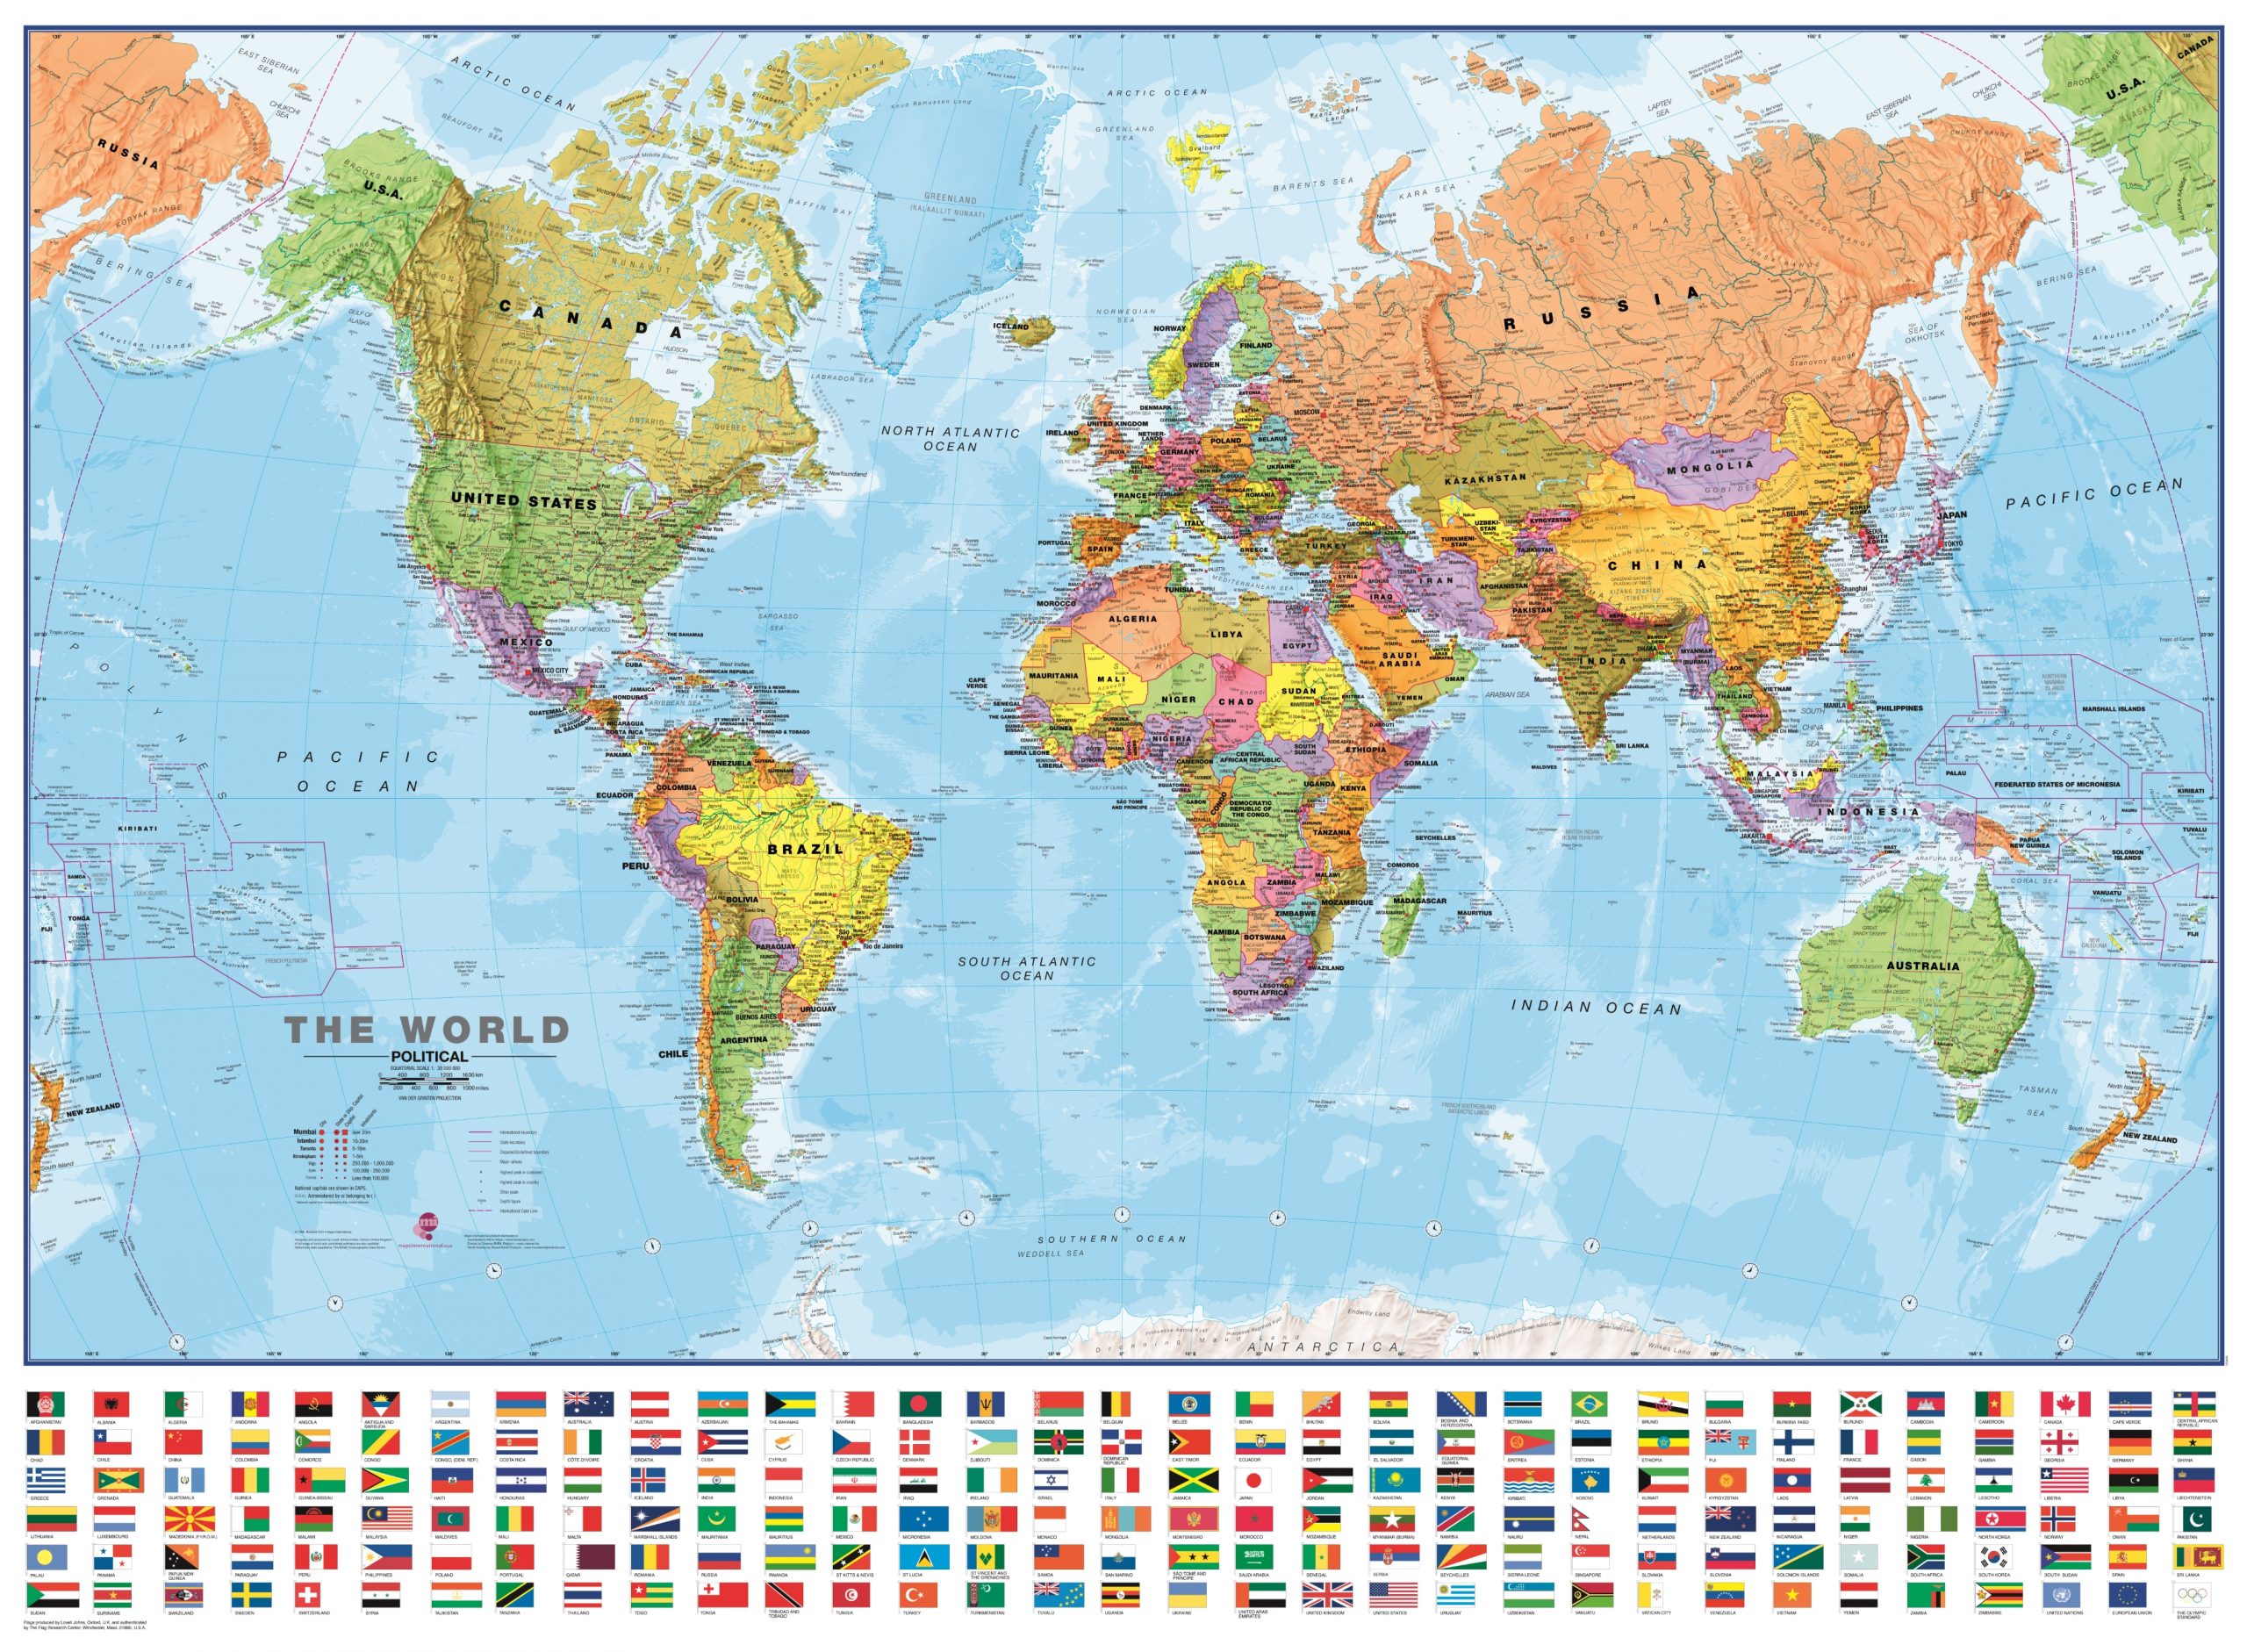 Weltkarte Politisch Mit Flaggen 135 X 100Cm 1:30 Mio über Weltkarte Mit Hauptstädten